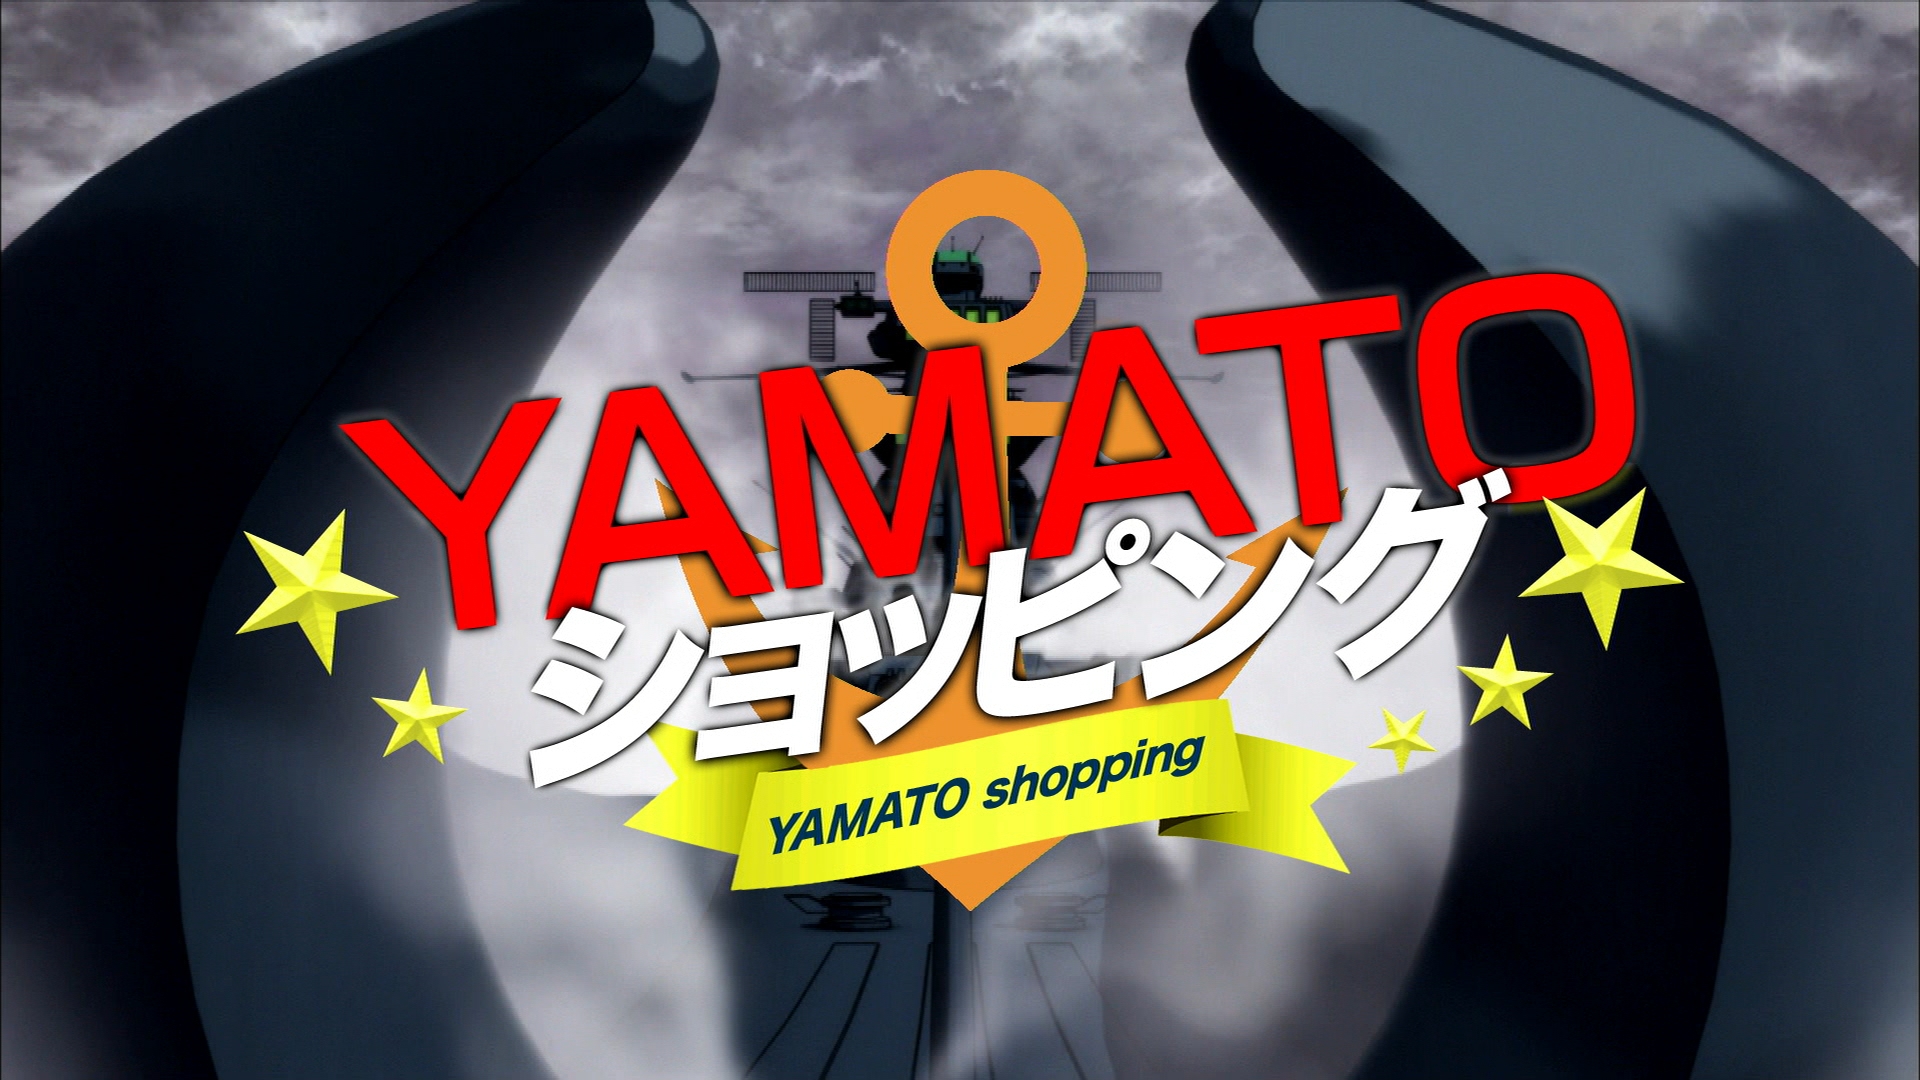 やのぱん 内田彩のヤマトショッピング Web視聴スタート 宇宙戦艦ヤマト2199星巡る方舟 Yamato Crew